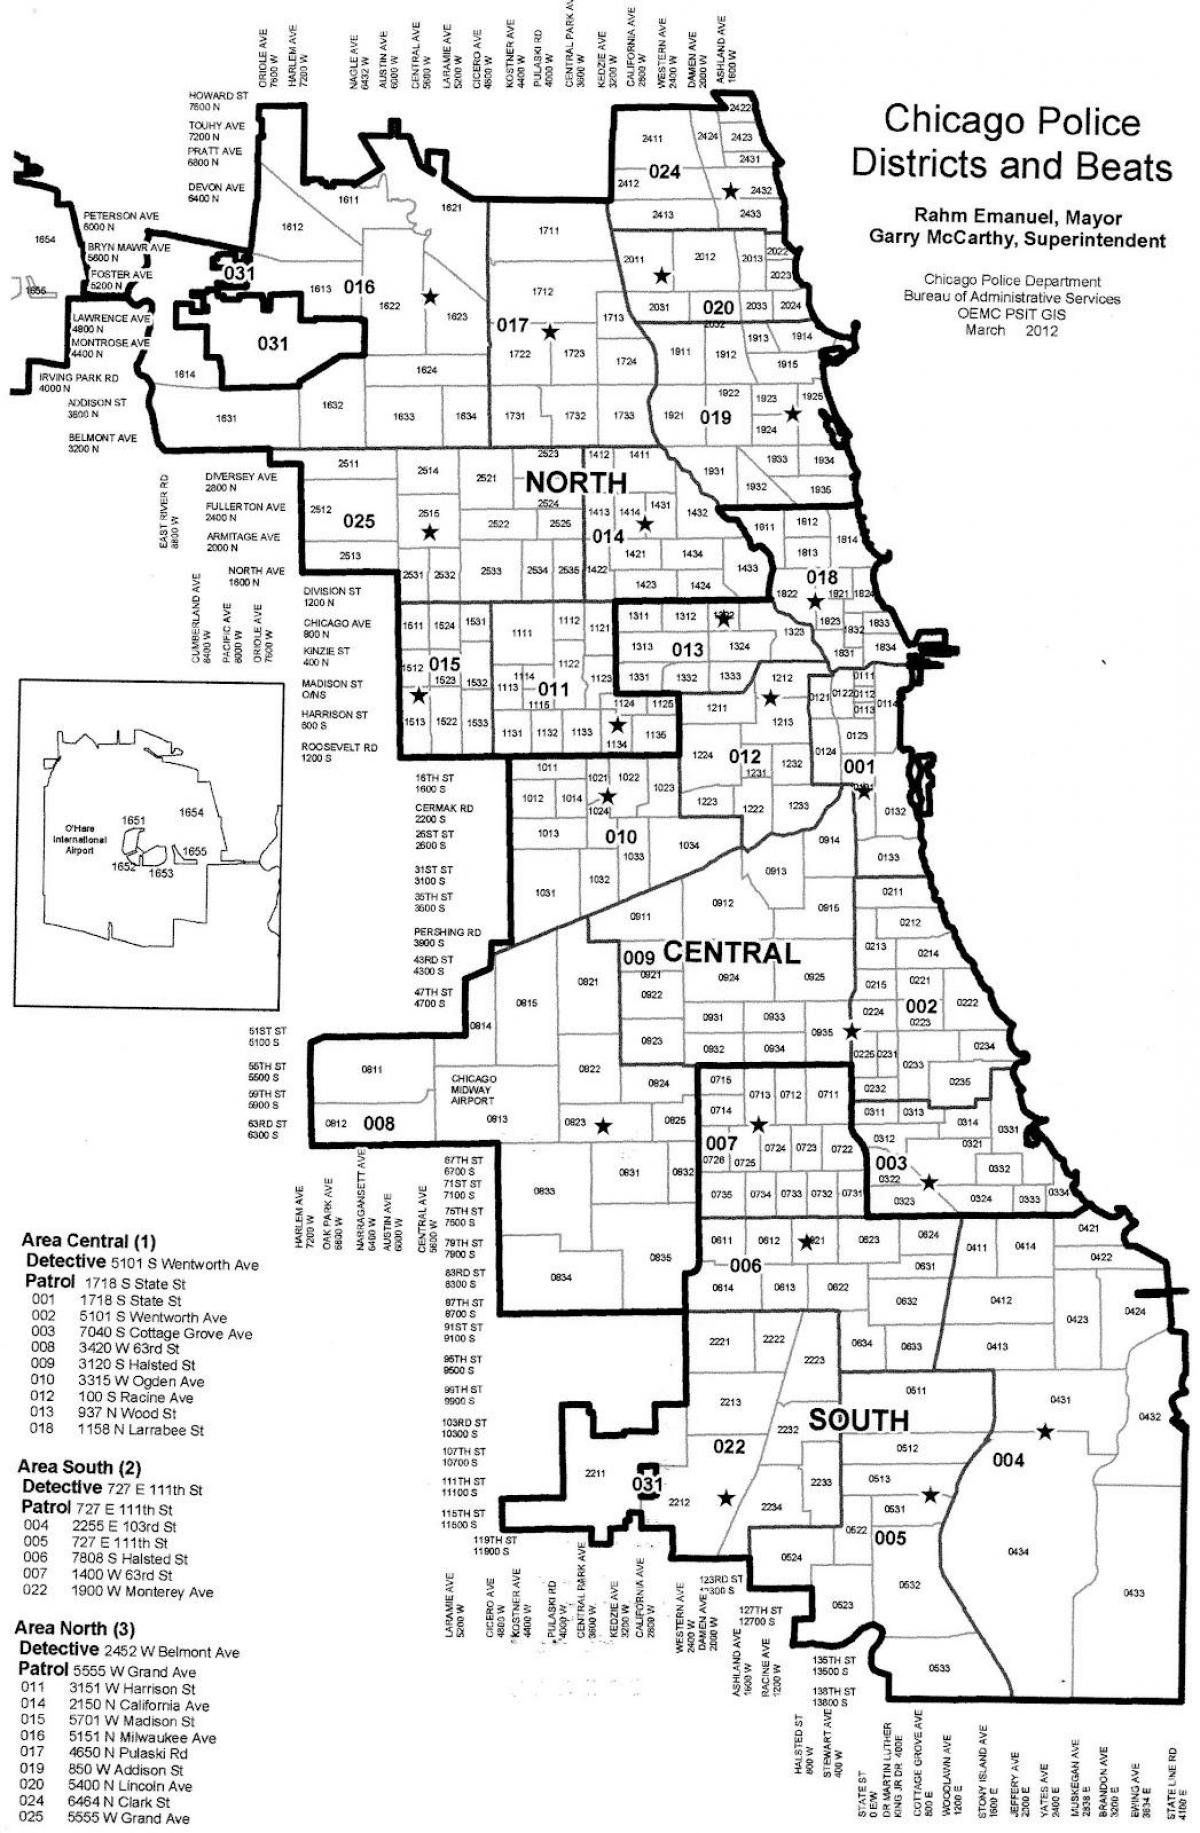 policijskih okolišev zemljevid Chicago